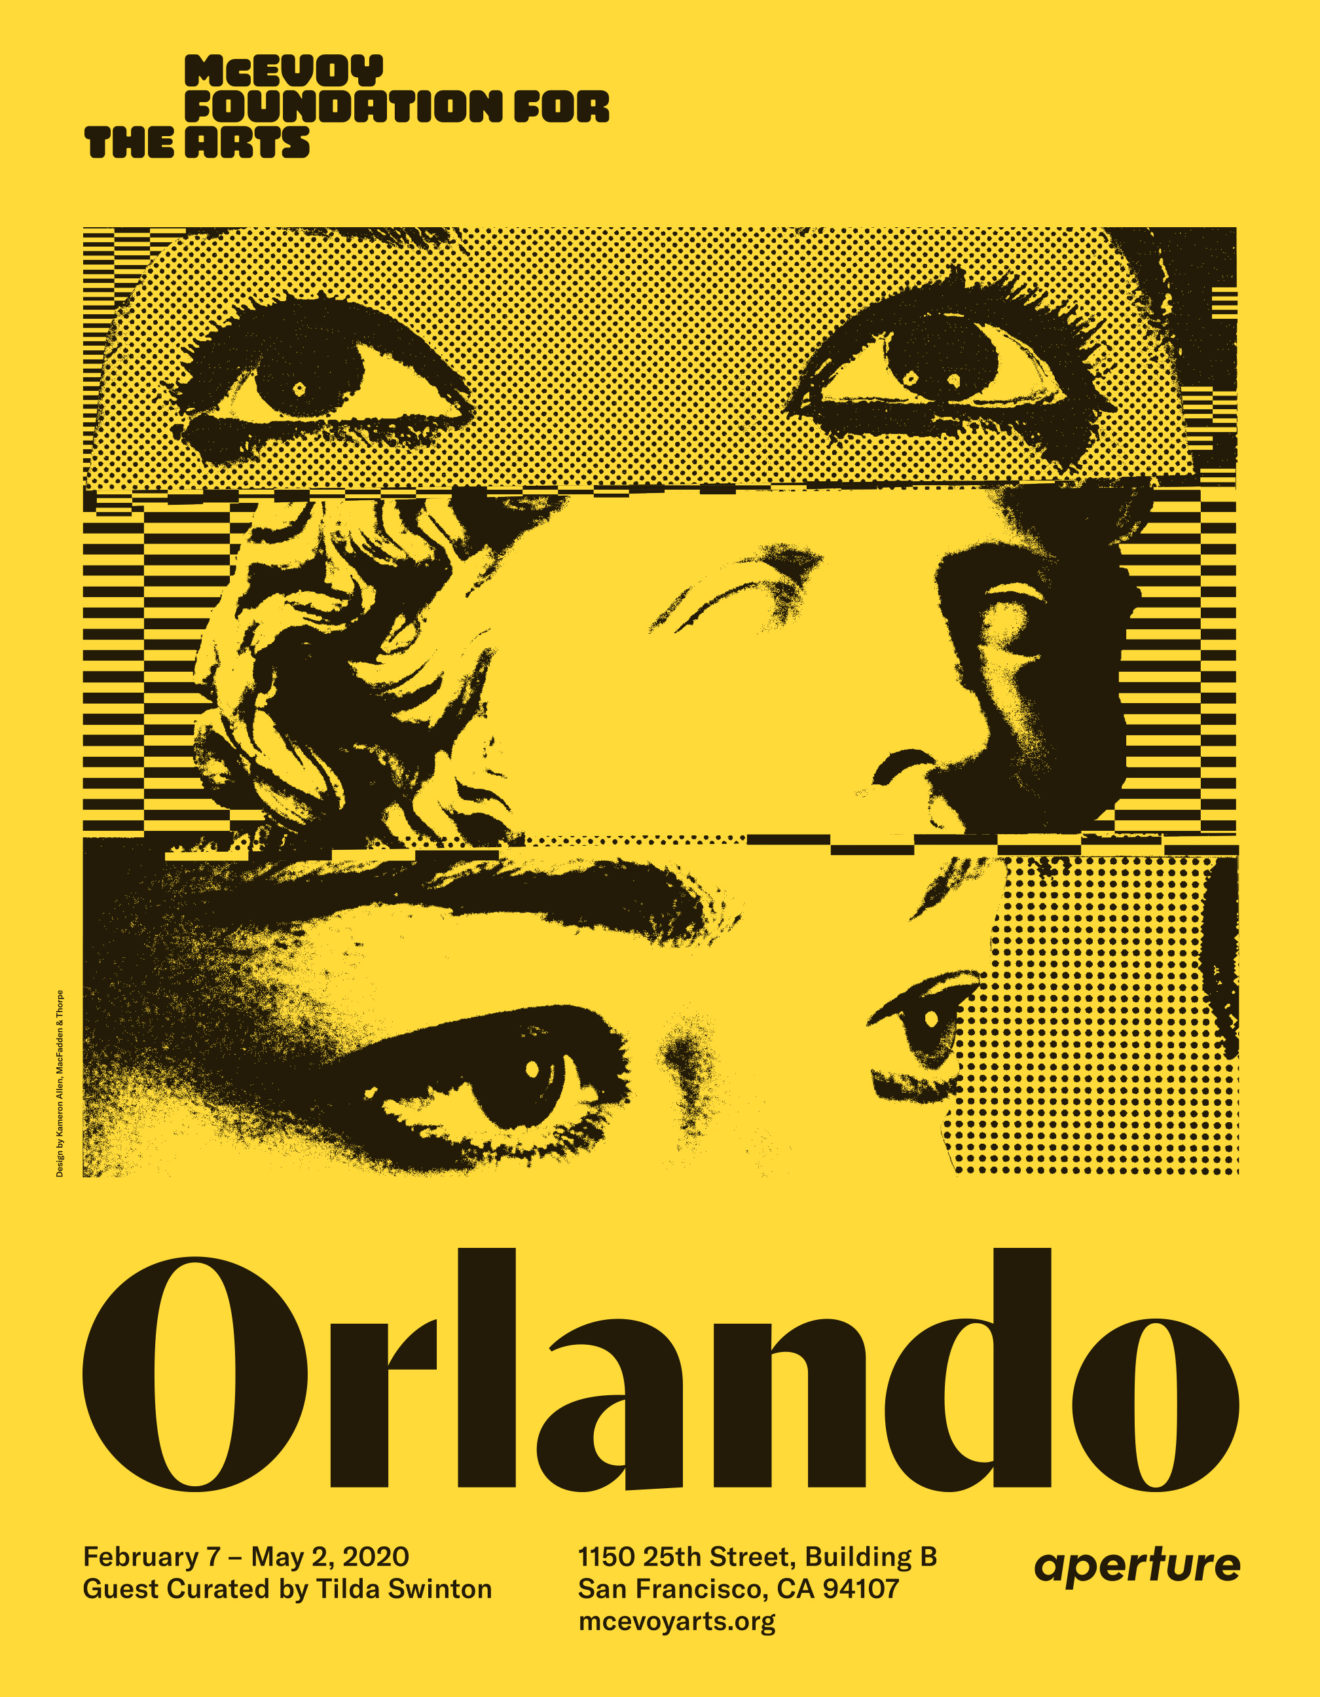  Orlando design by Kameron Allen, MacFadden & Thorpe 